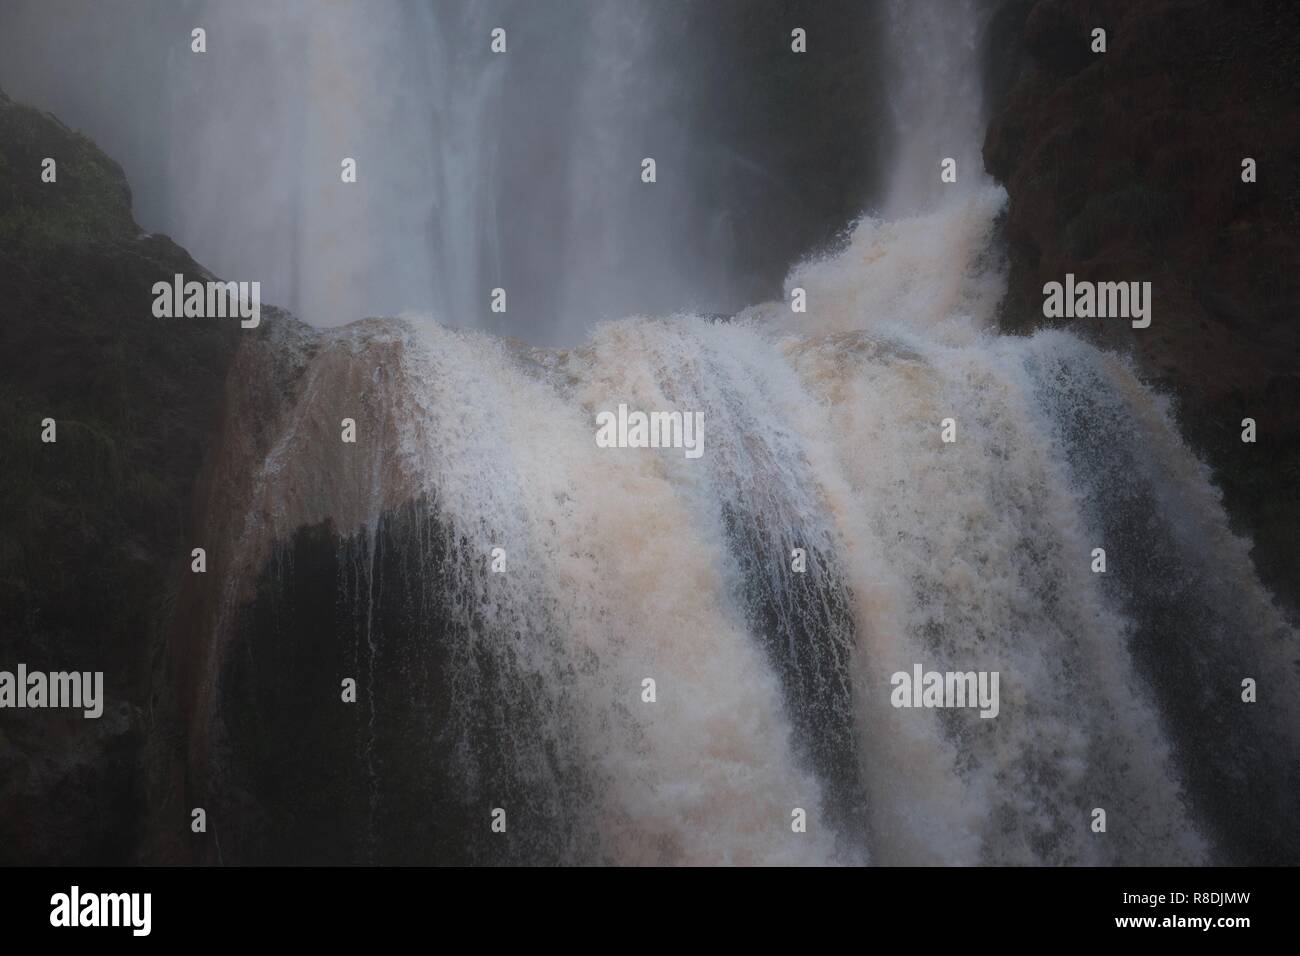 Nahaufnahme von heftig schäumenden Wasser stürzt die Kante einer dramatischen Wasserfall, die obere Hälfte ist im Hintergrund Stockfoto